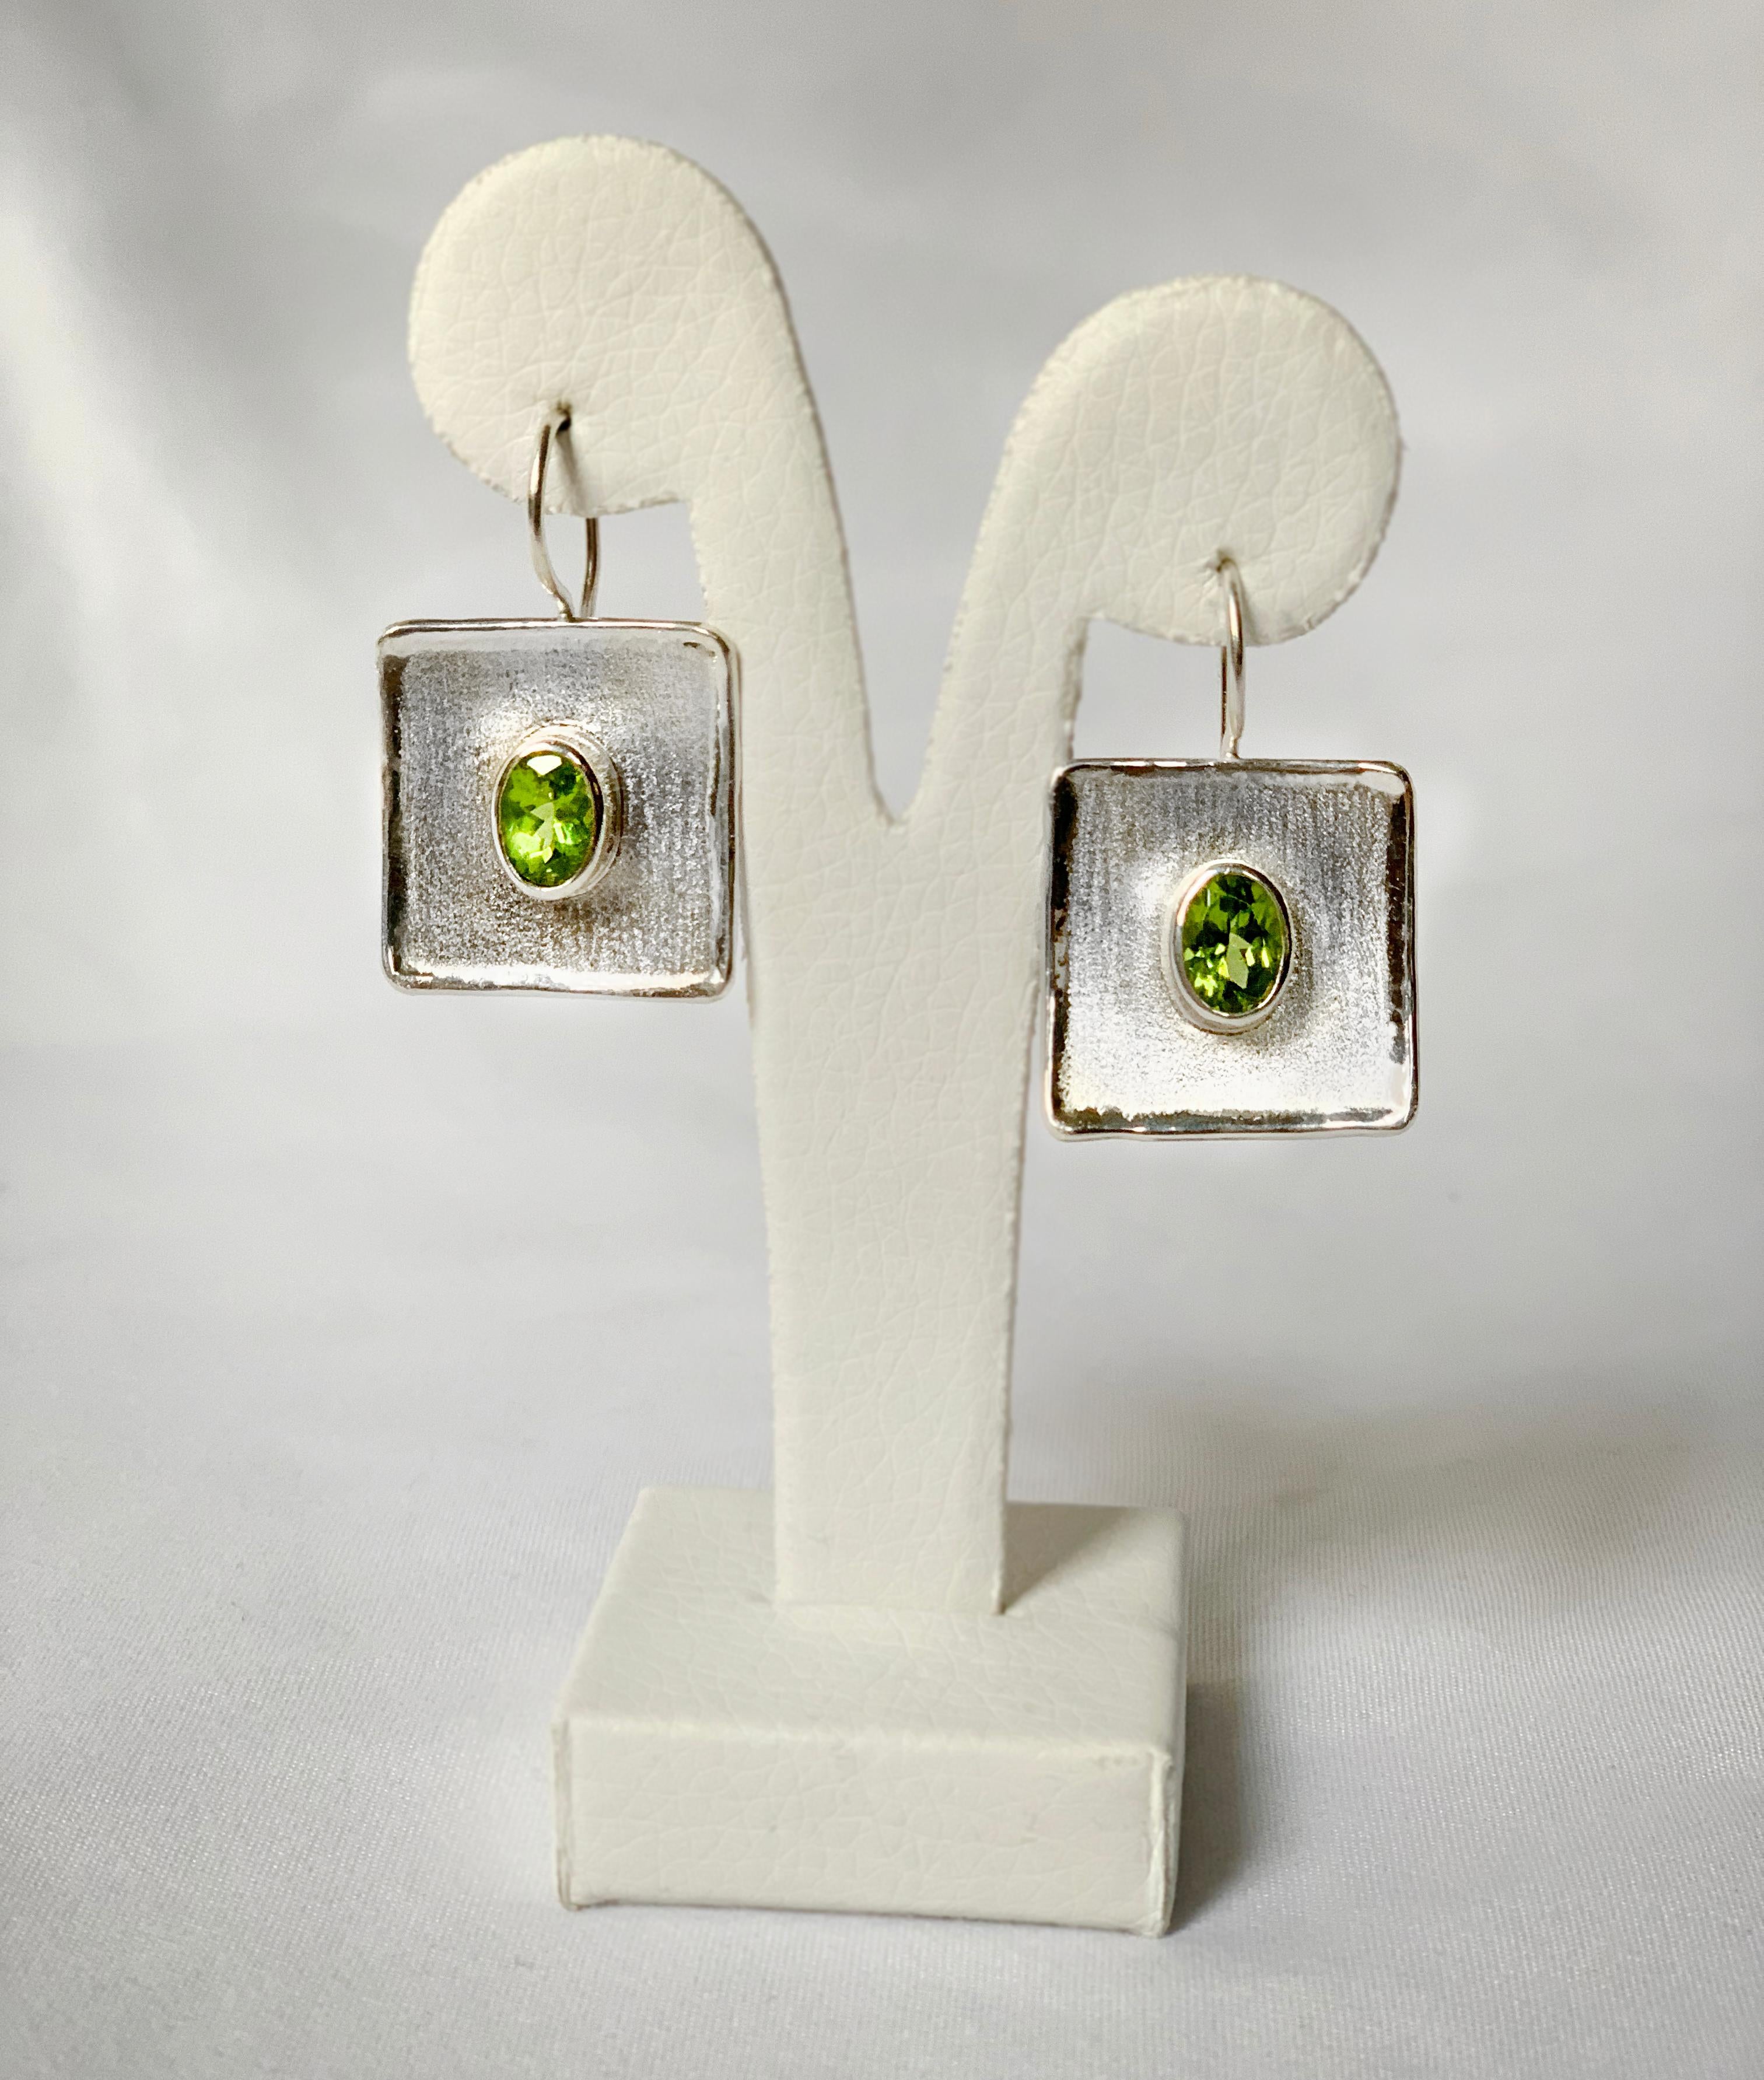 Diese Ohrringe aus Feinsilber von Yianni Creations wurden für Ammos Collection in Griechenland handgefertigt. Jeder dieser handgefertigten Ohrringe enthält einen Peridot mit 1,35 Karat im Ovalschliff. Der einzigartige Look entsteht durch die